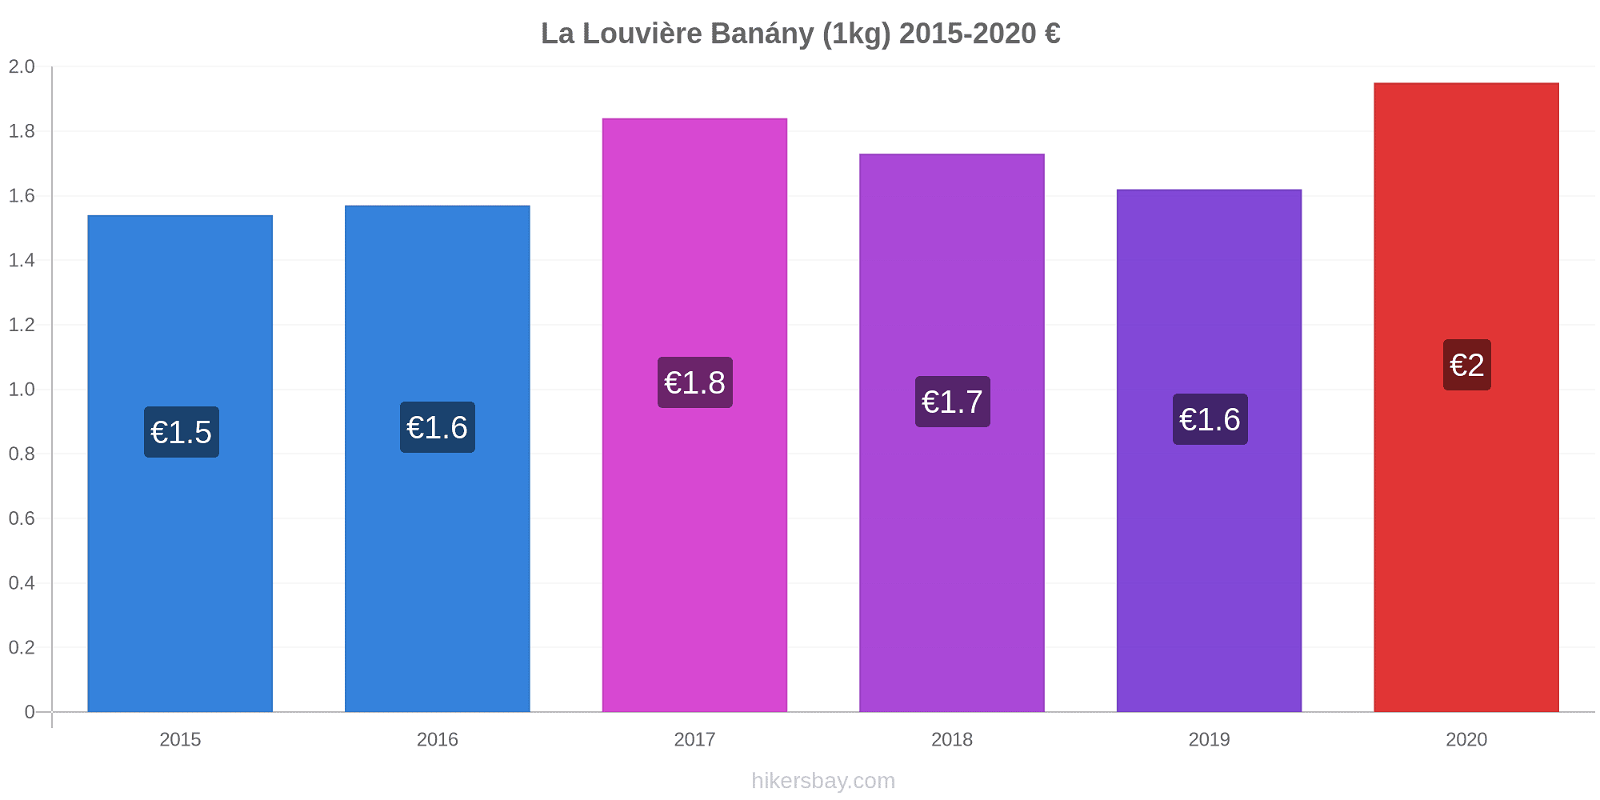 La Louvière změny cen Banány (1kg) hikersbay.com